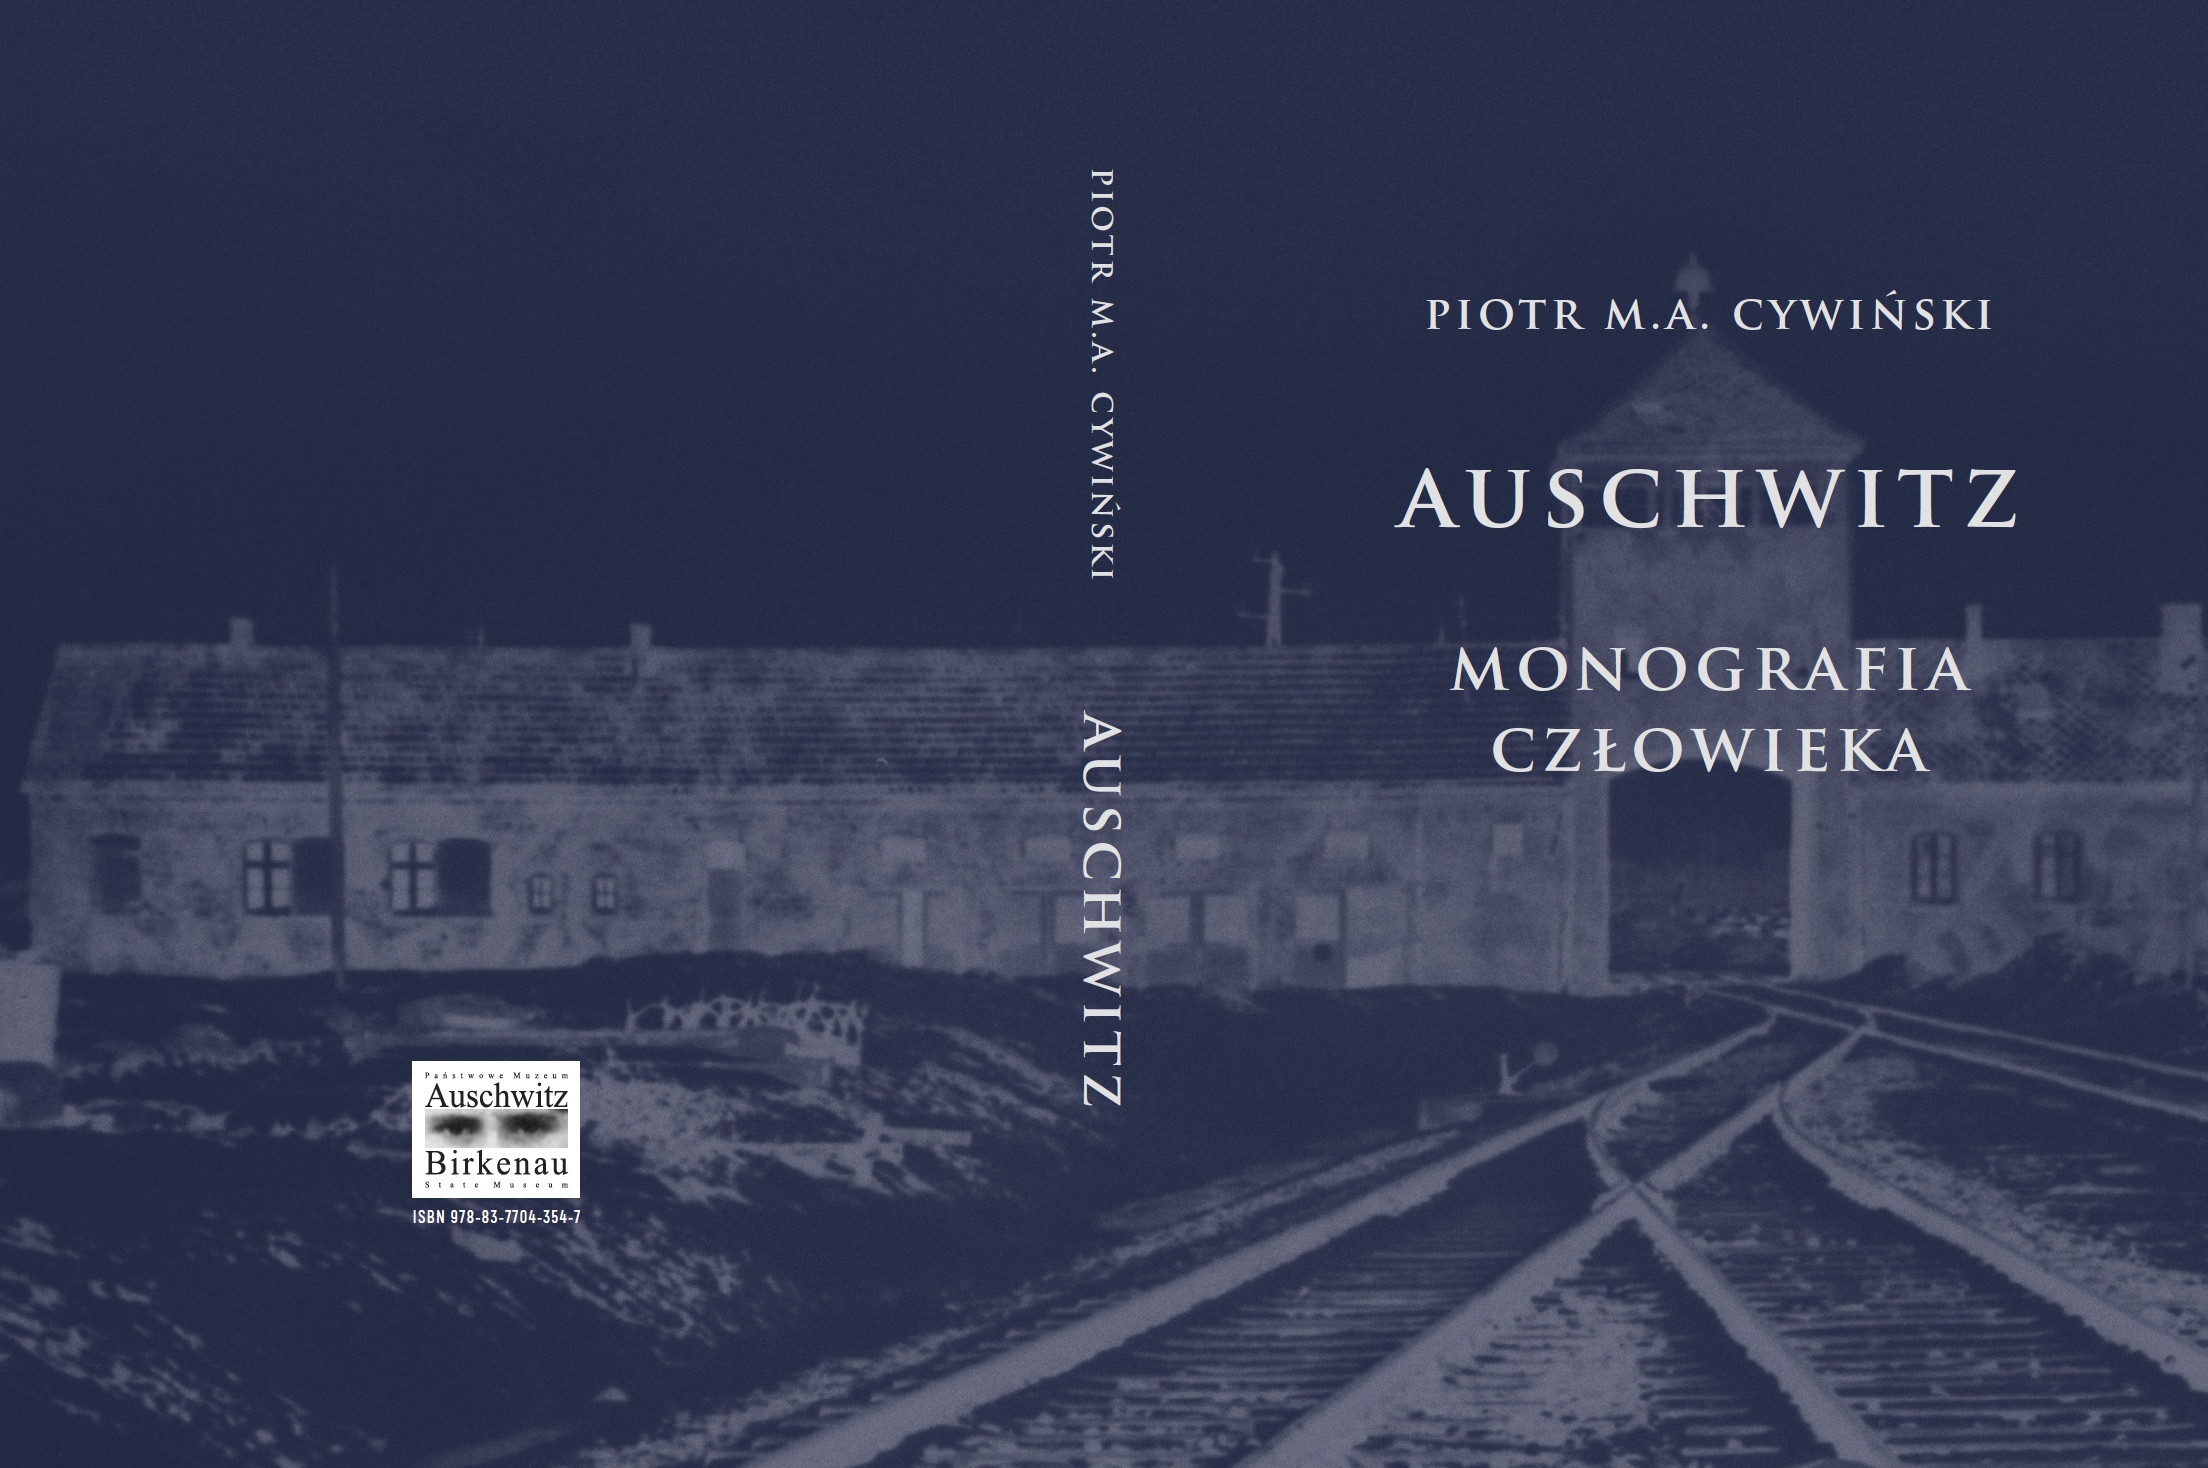 Okładka książki „Auschwitz. Monografia człowieka” autorstaw Piotra Cywińskiego. Na okładce widoczny zarys Bramy Śmierci w byłym KL Birkenau.